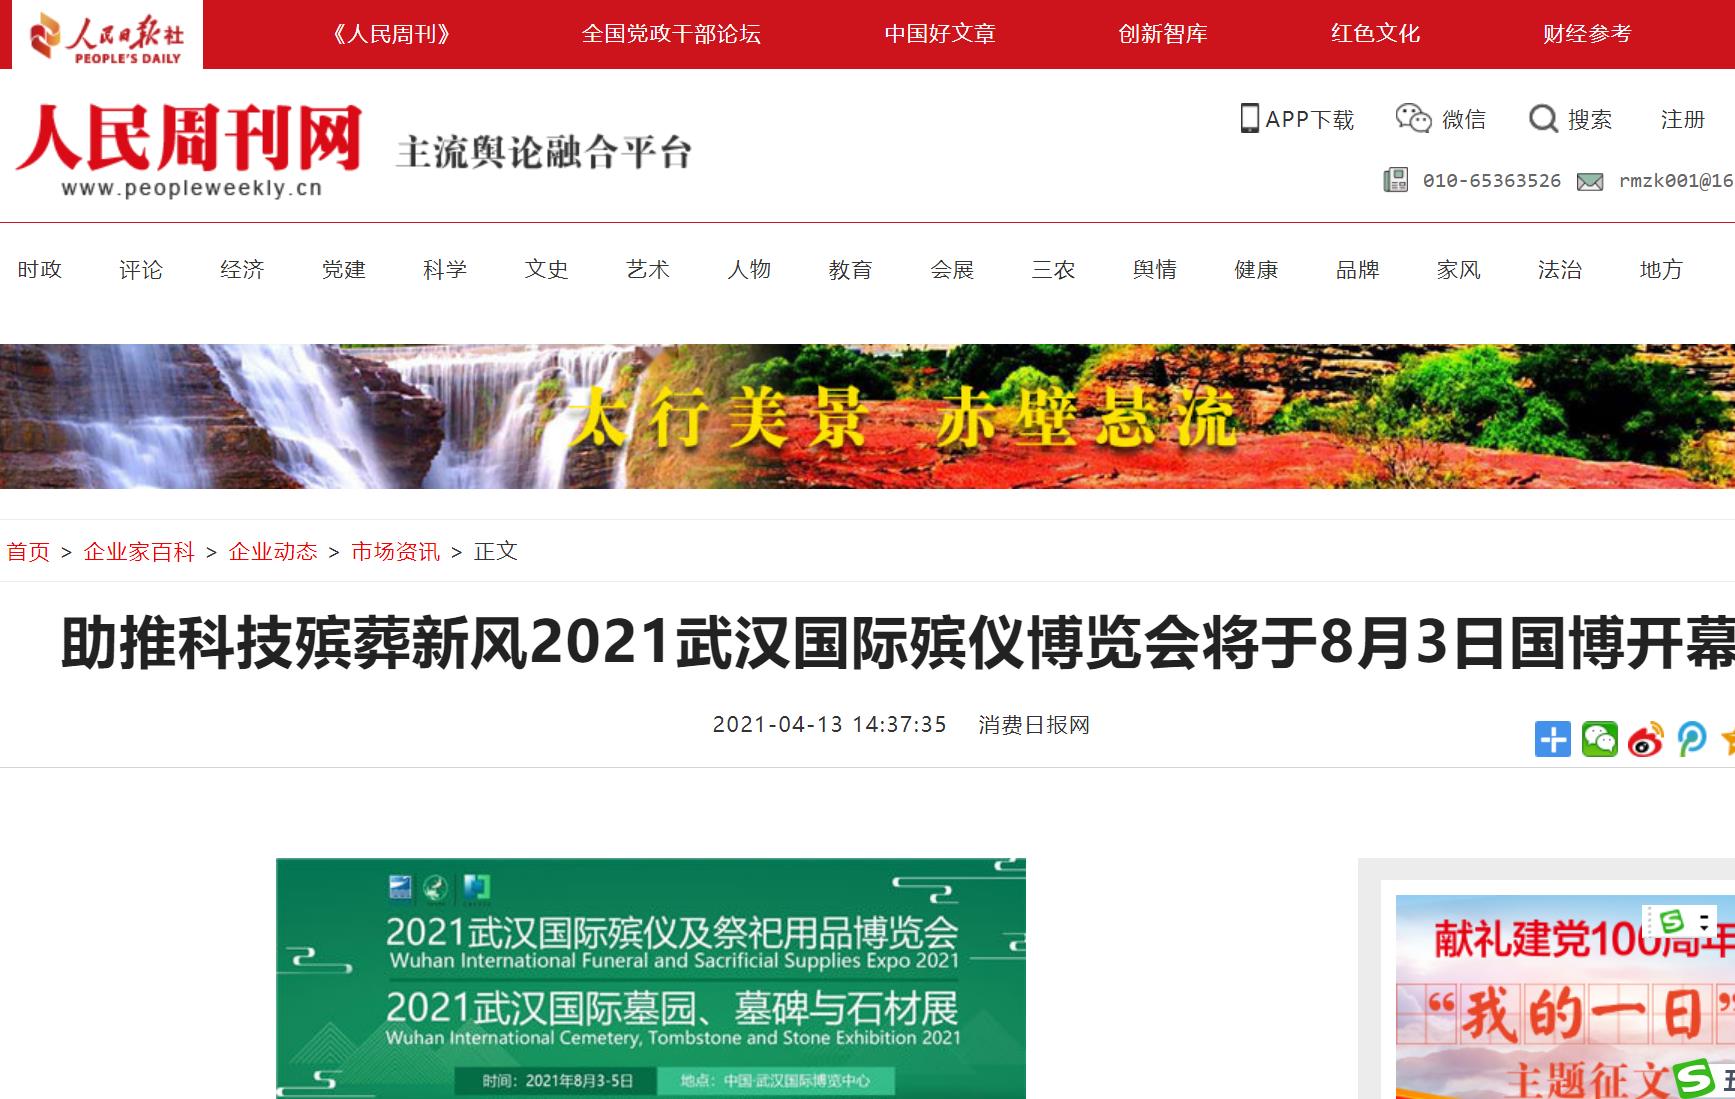 感谢人们周刊报道武汉国际殡仪博览会